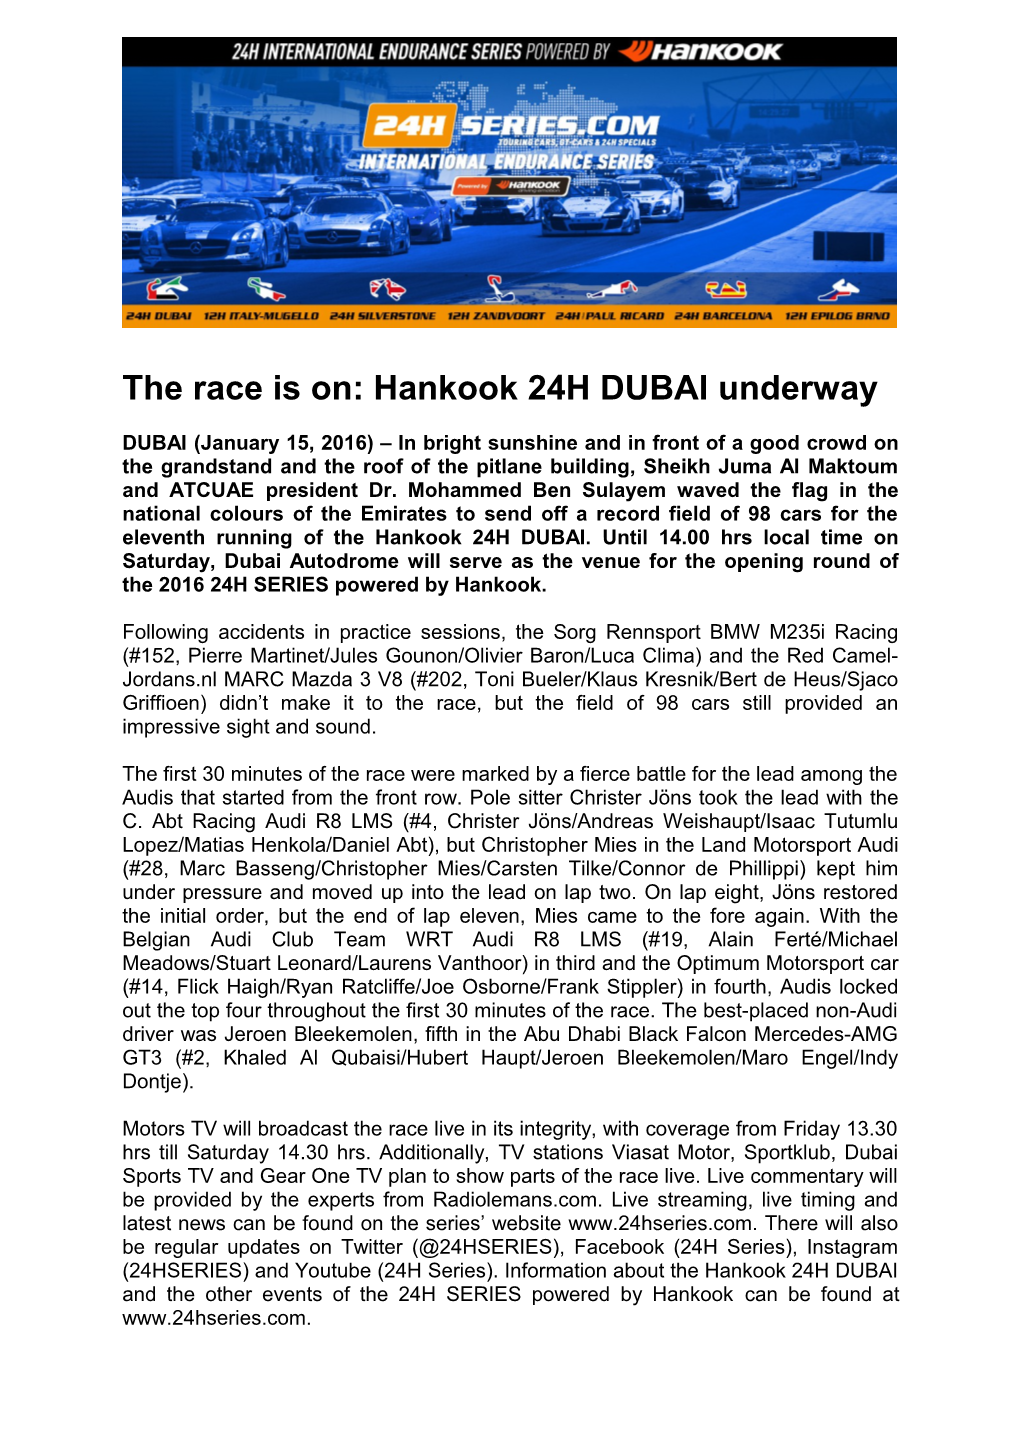 The Race Is On: Hankook 24H DUBAI Underway